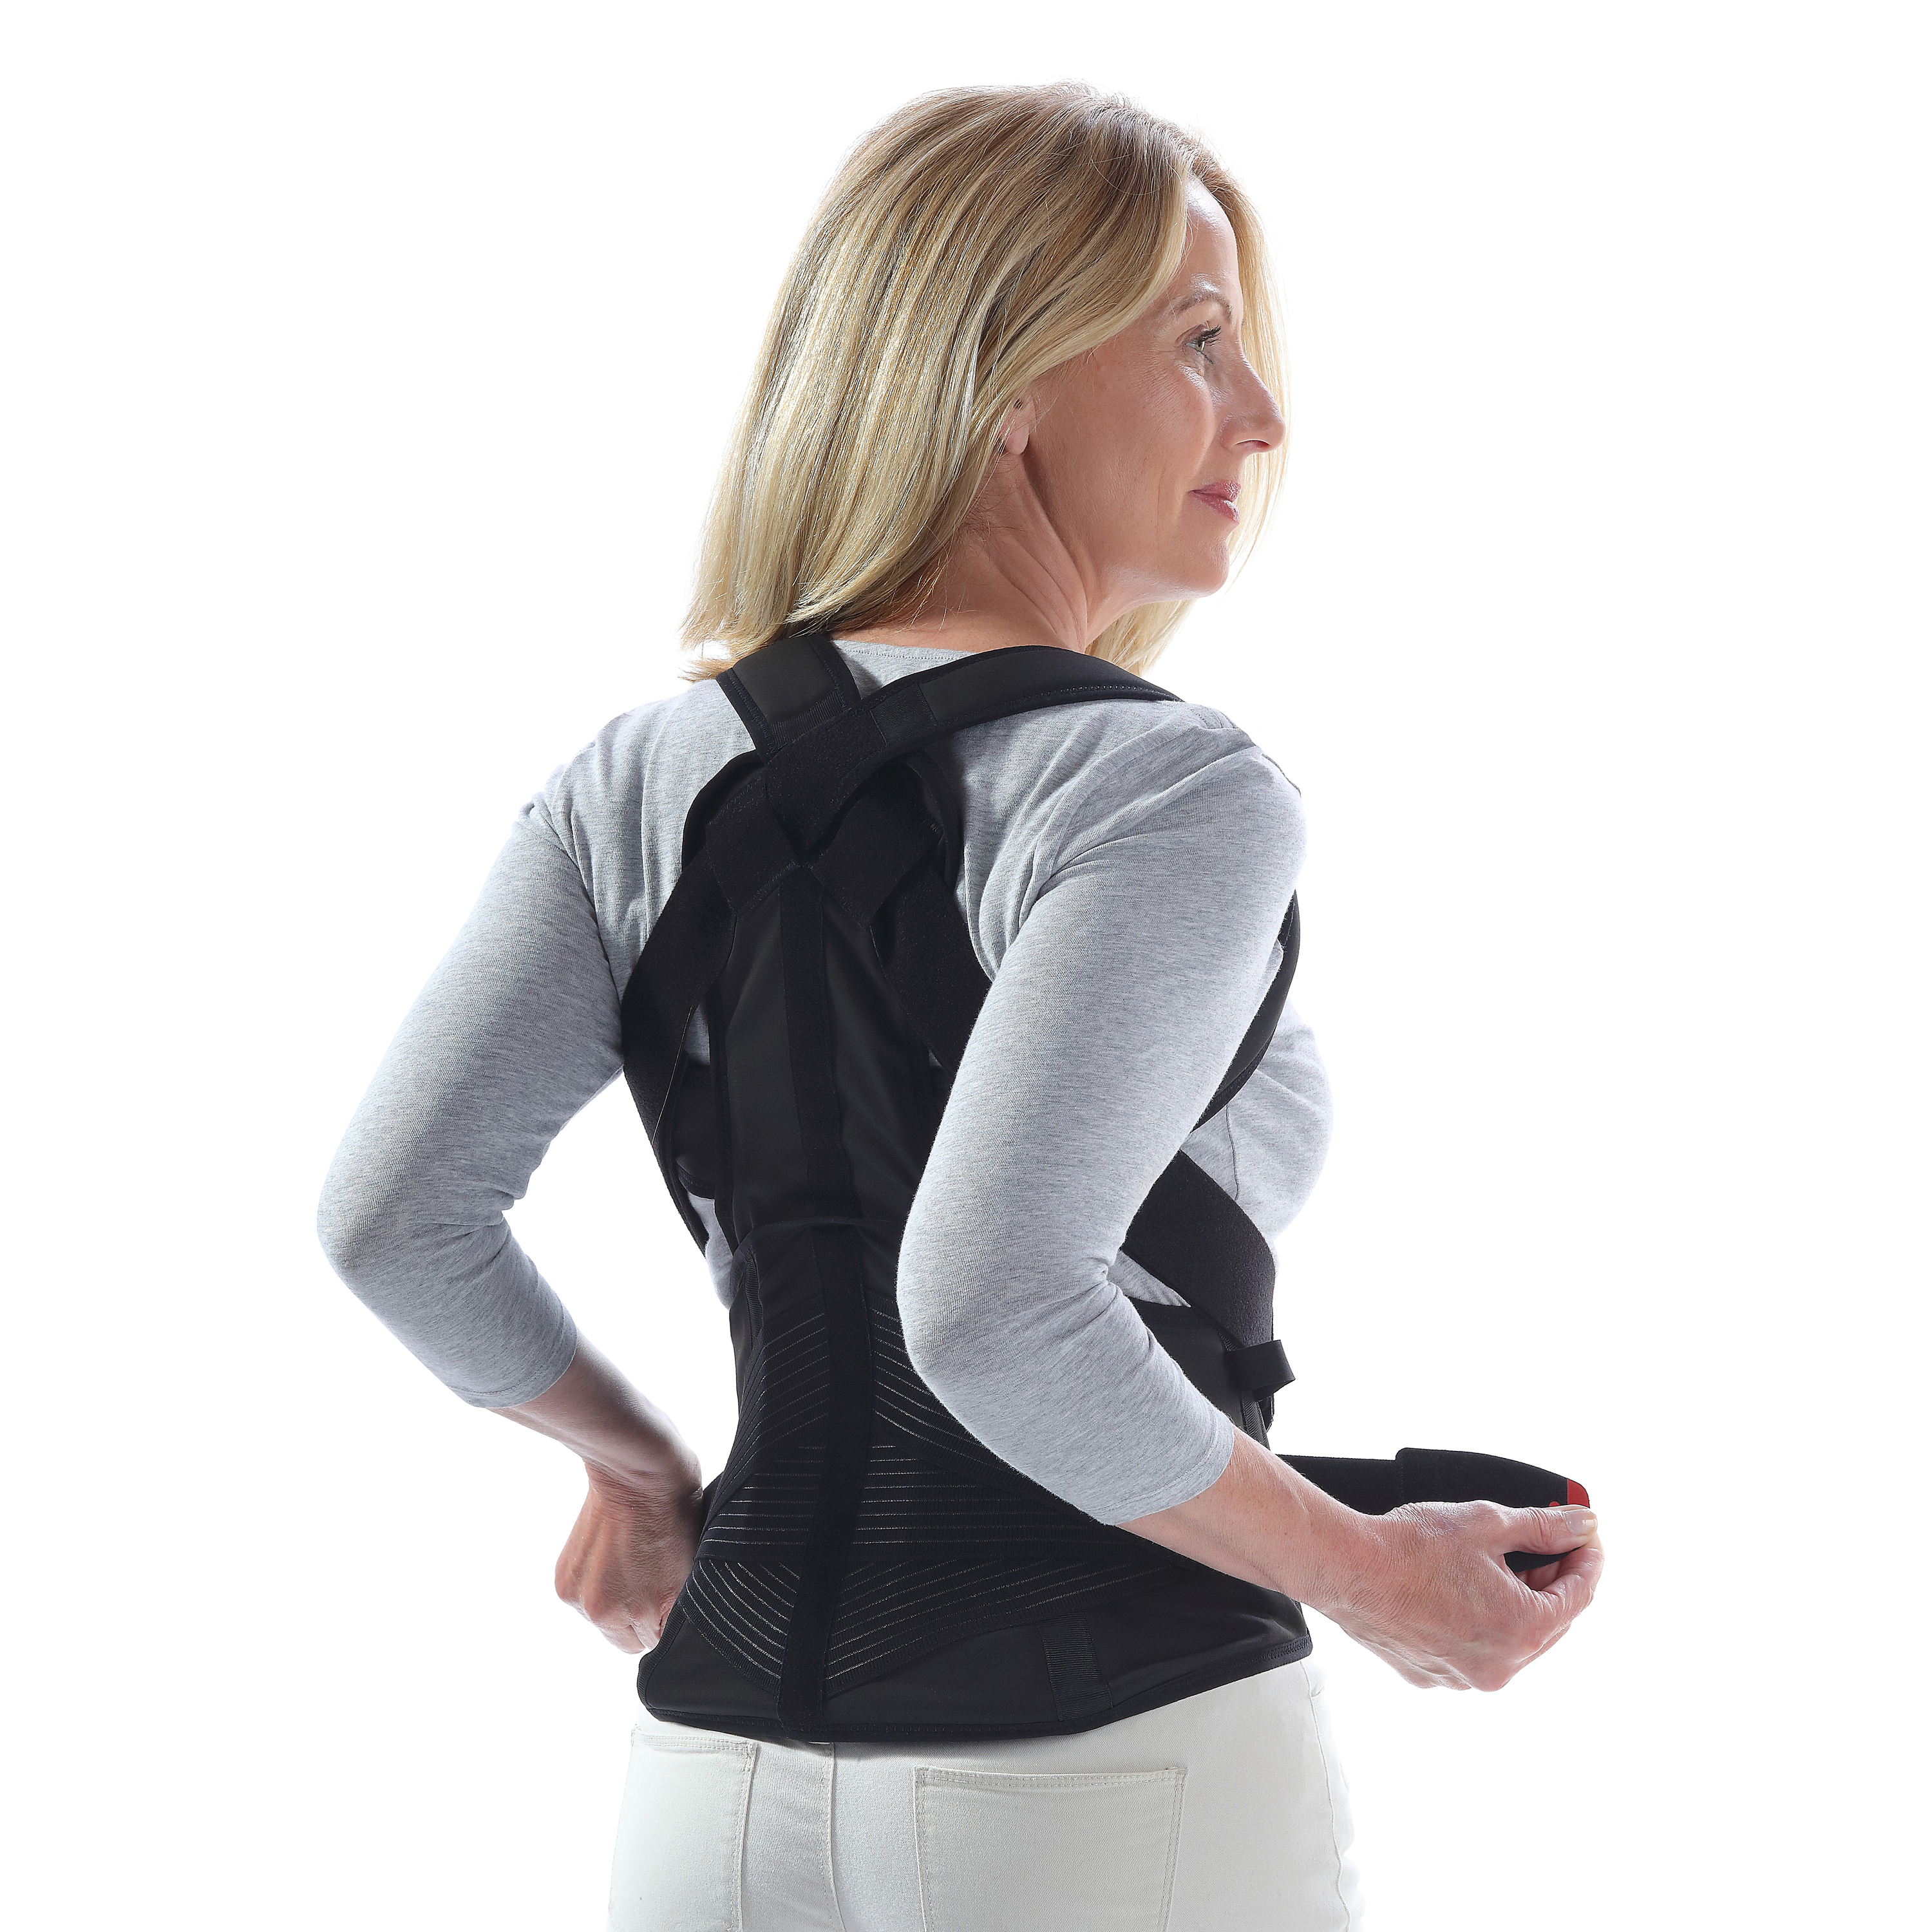 Produktbild  DONJOY® OsteoStrap, Rückenorthese zur aktiven Entlastung der LWS/BWS